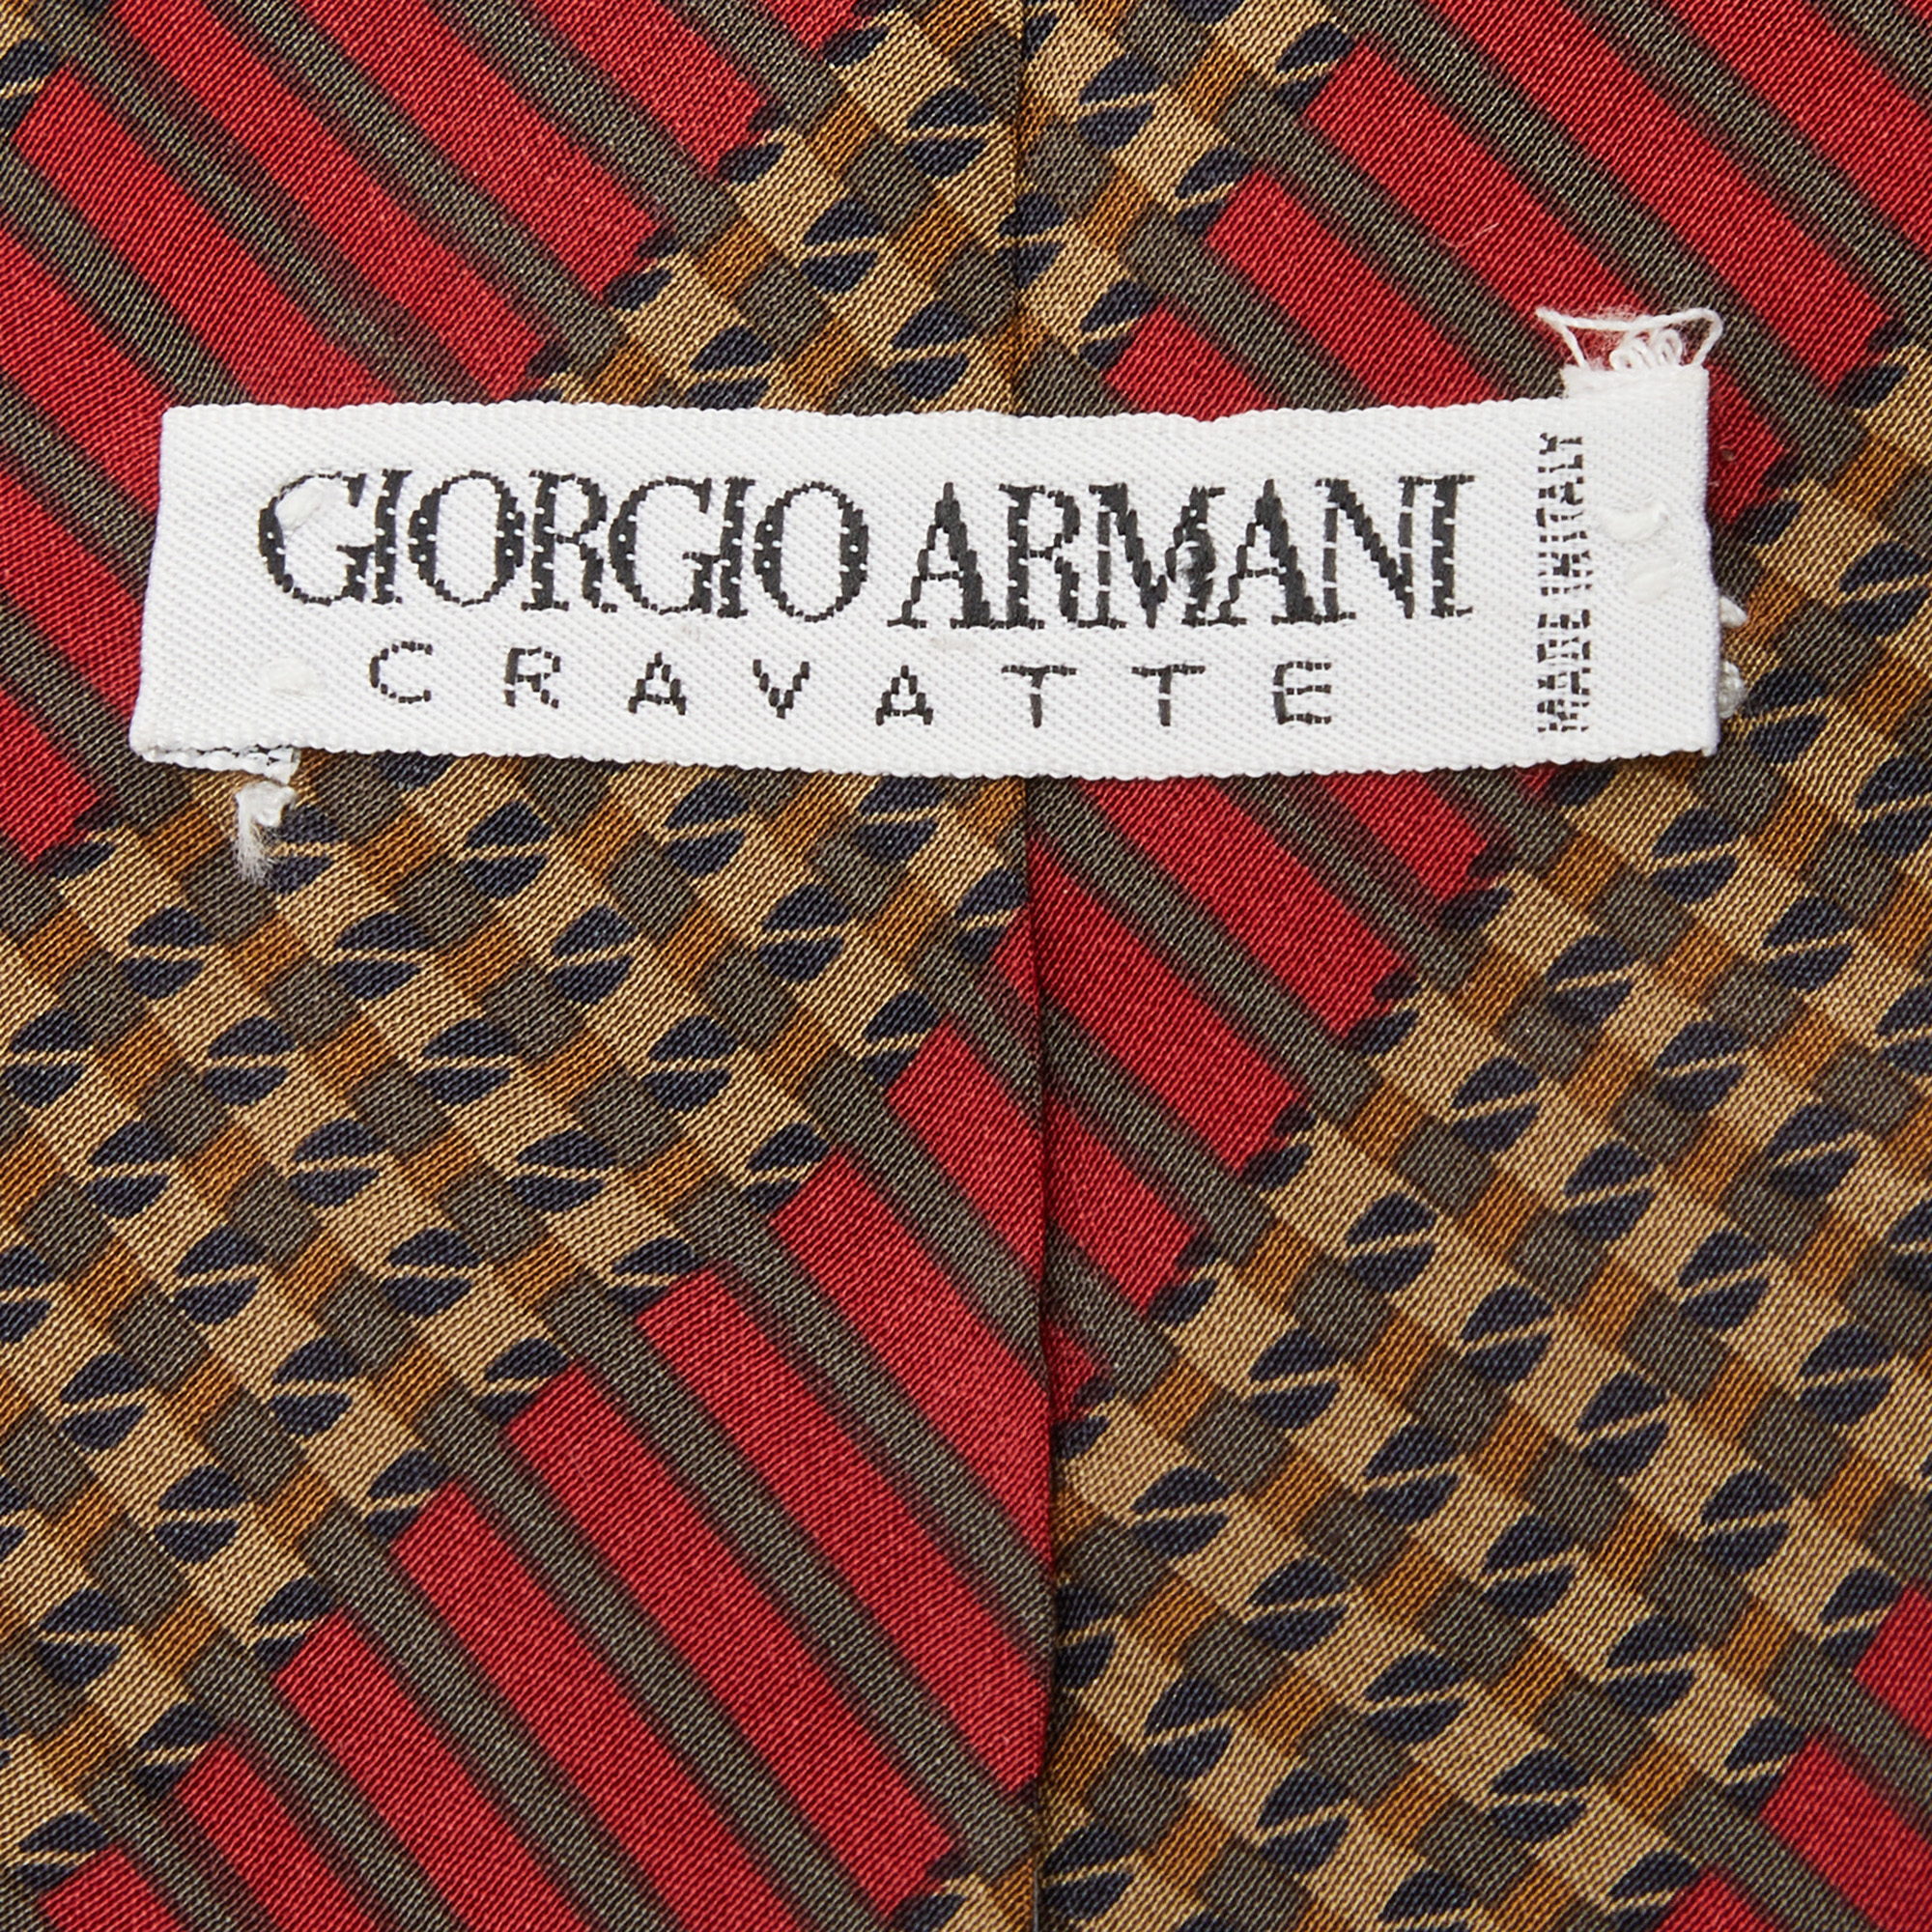 Giorgio Armani Red Printed Striped Silk Tie